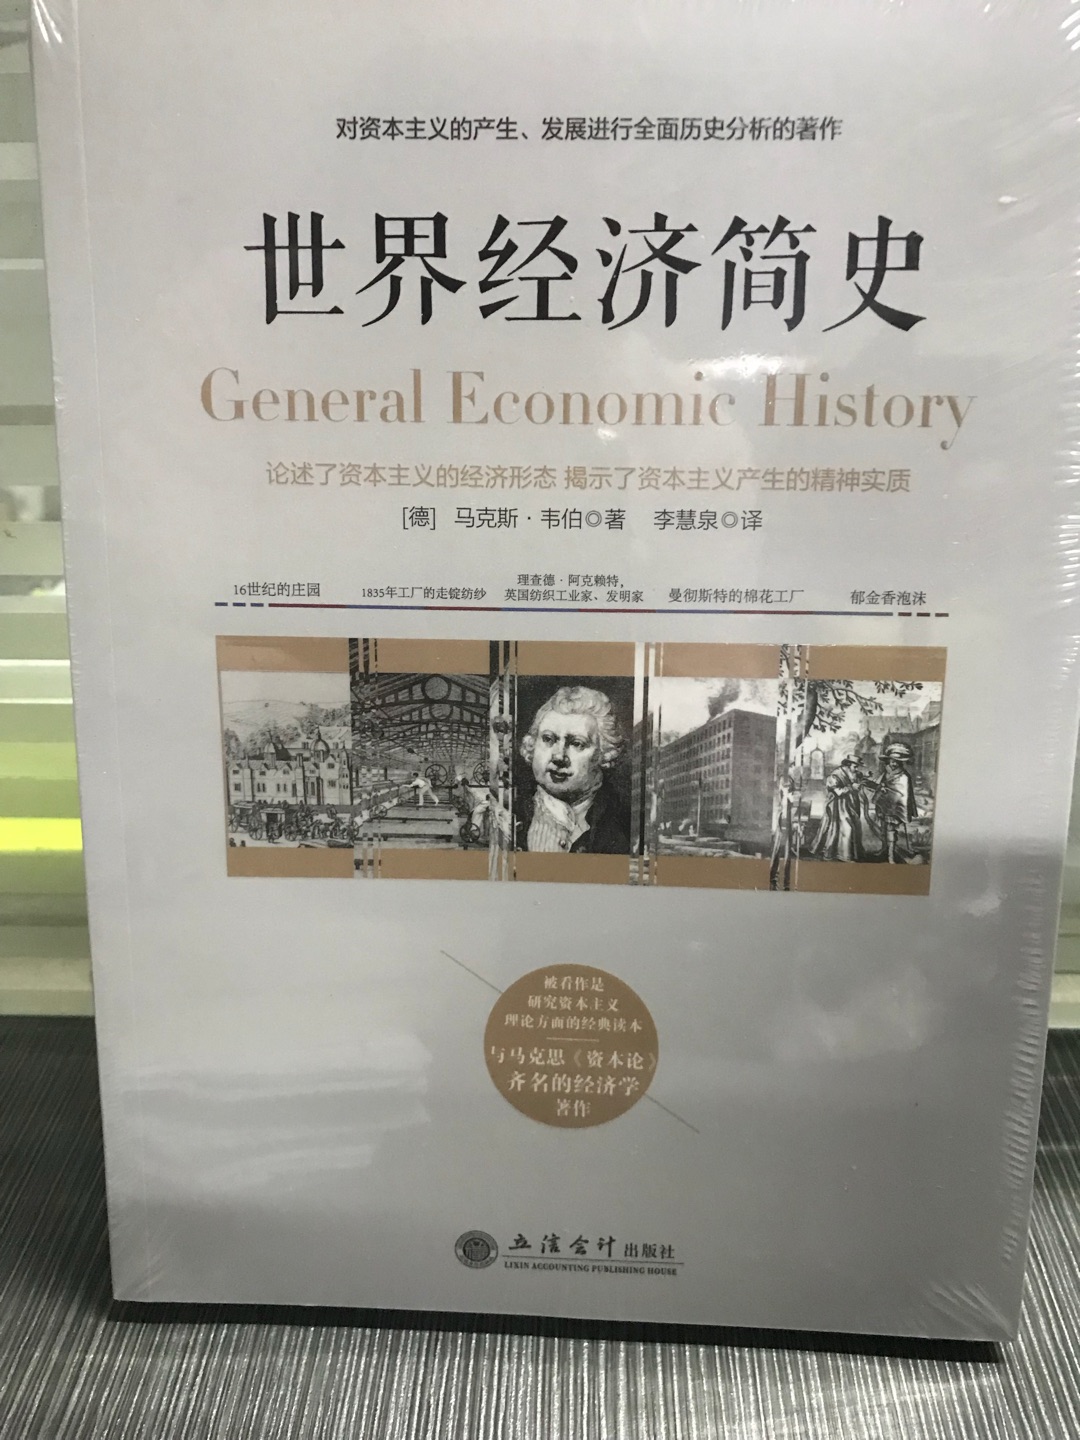 不错的书，里面很多图。韦伯的书。这本是与马克思  资本论 齐名的一本经济学著作，论述了资本主义的经济形态，揭示了资本主义精神的实质。值得一读，推荐。里面有图